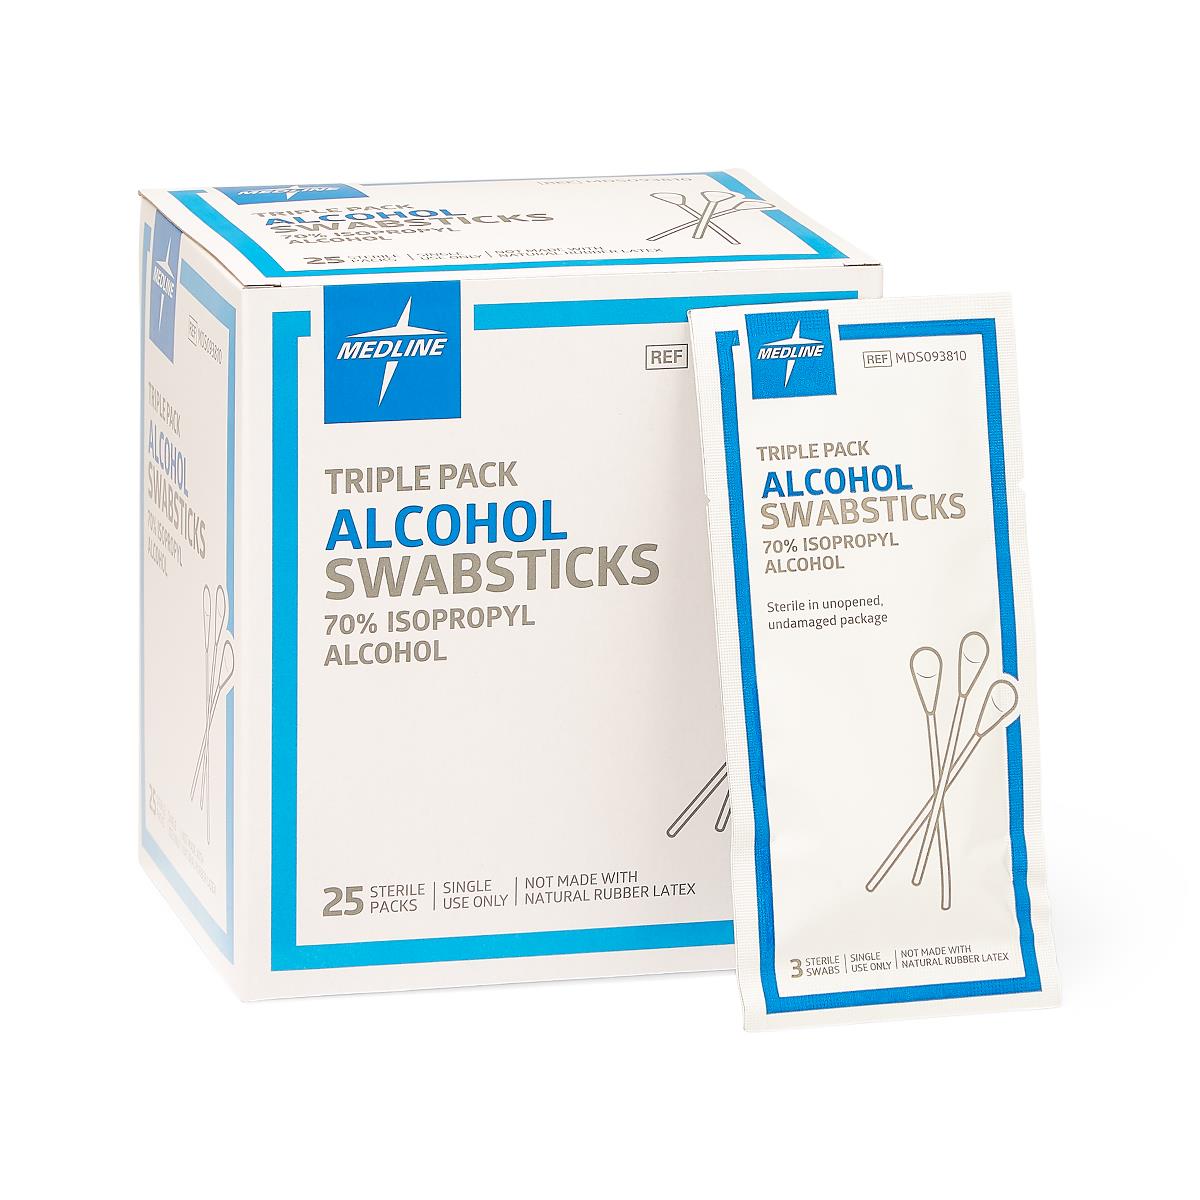 Medline Sterile Triple Pack Alcohol Swabsticks 25pk/bx MDS093810Z